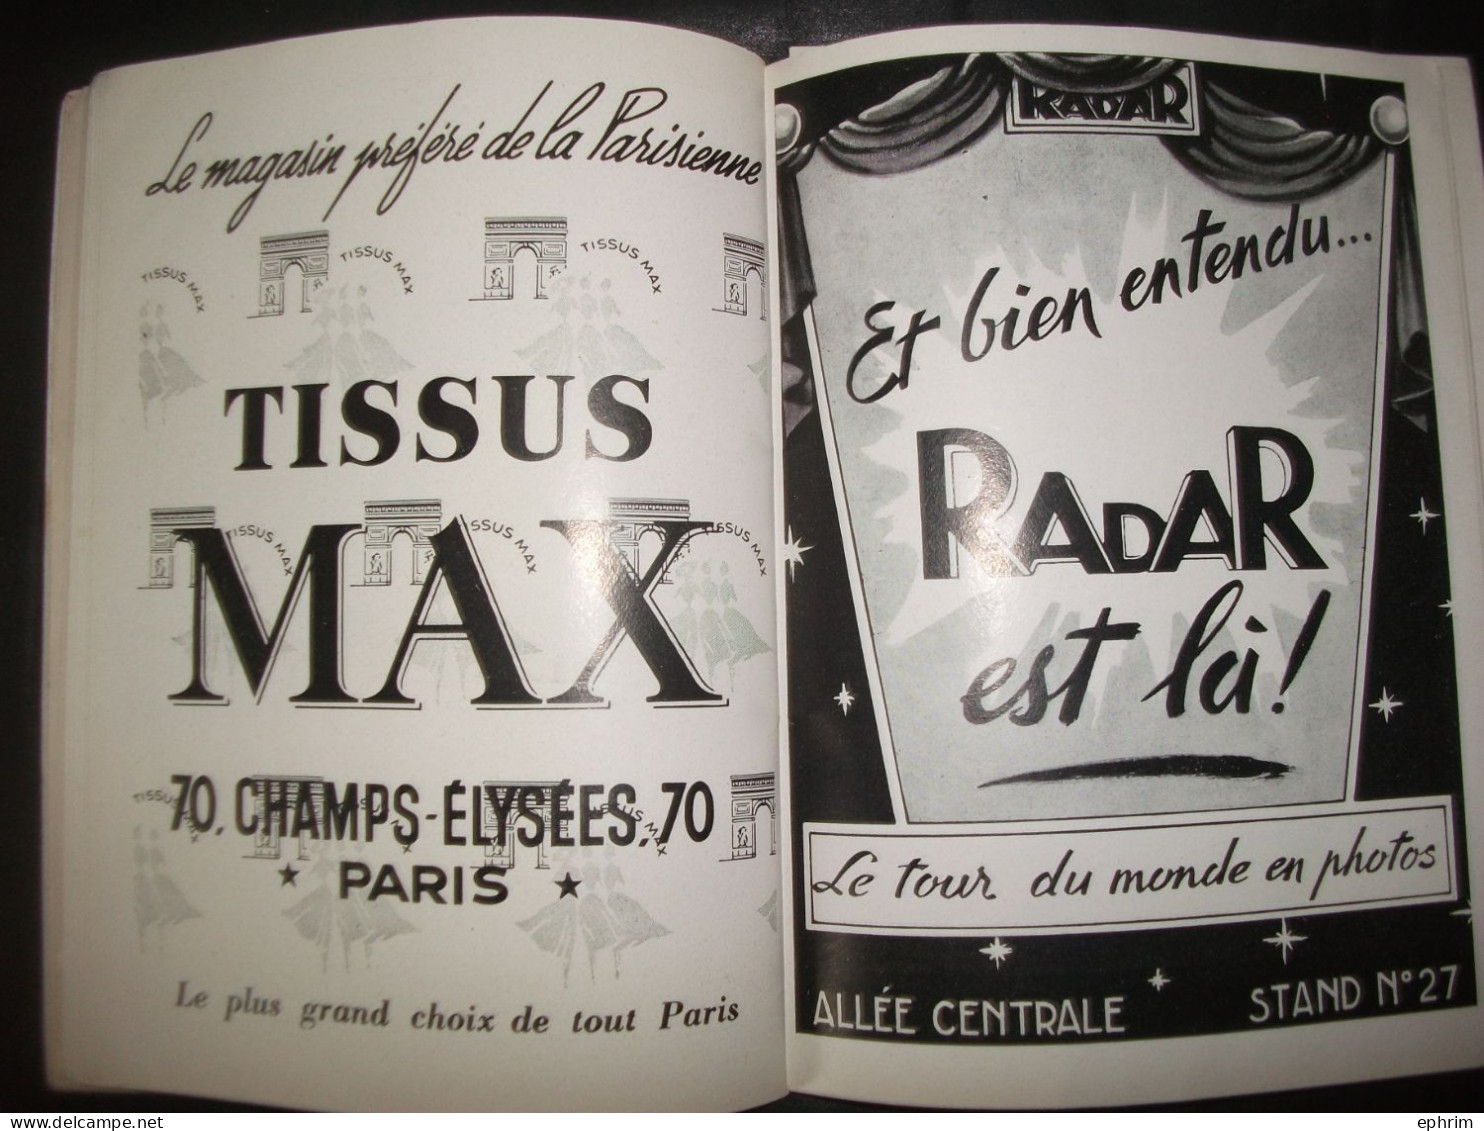 La Kermesse aux Etoiles 1954 Carnet d'Autographes Autographe Vedette Acteur Paul Meurisse Michel Galabru Micheline Dax..